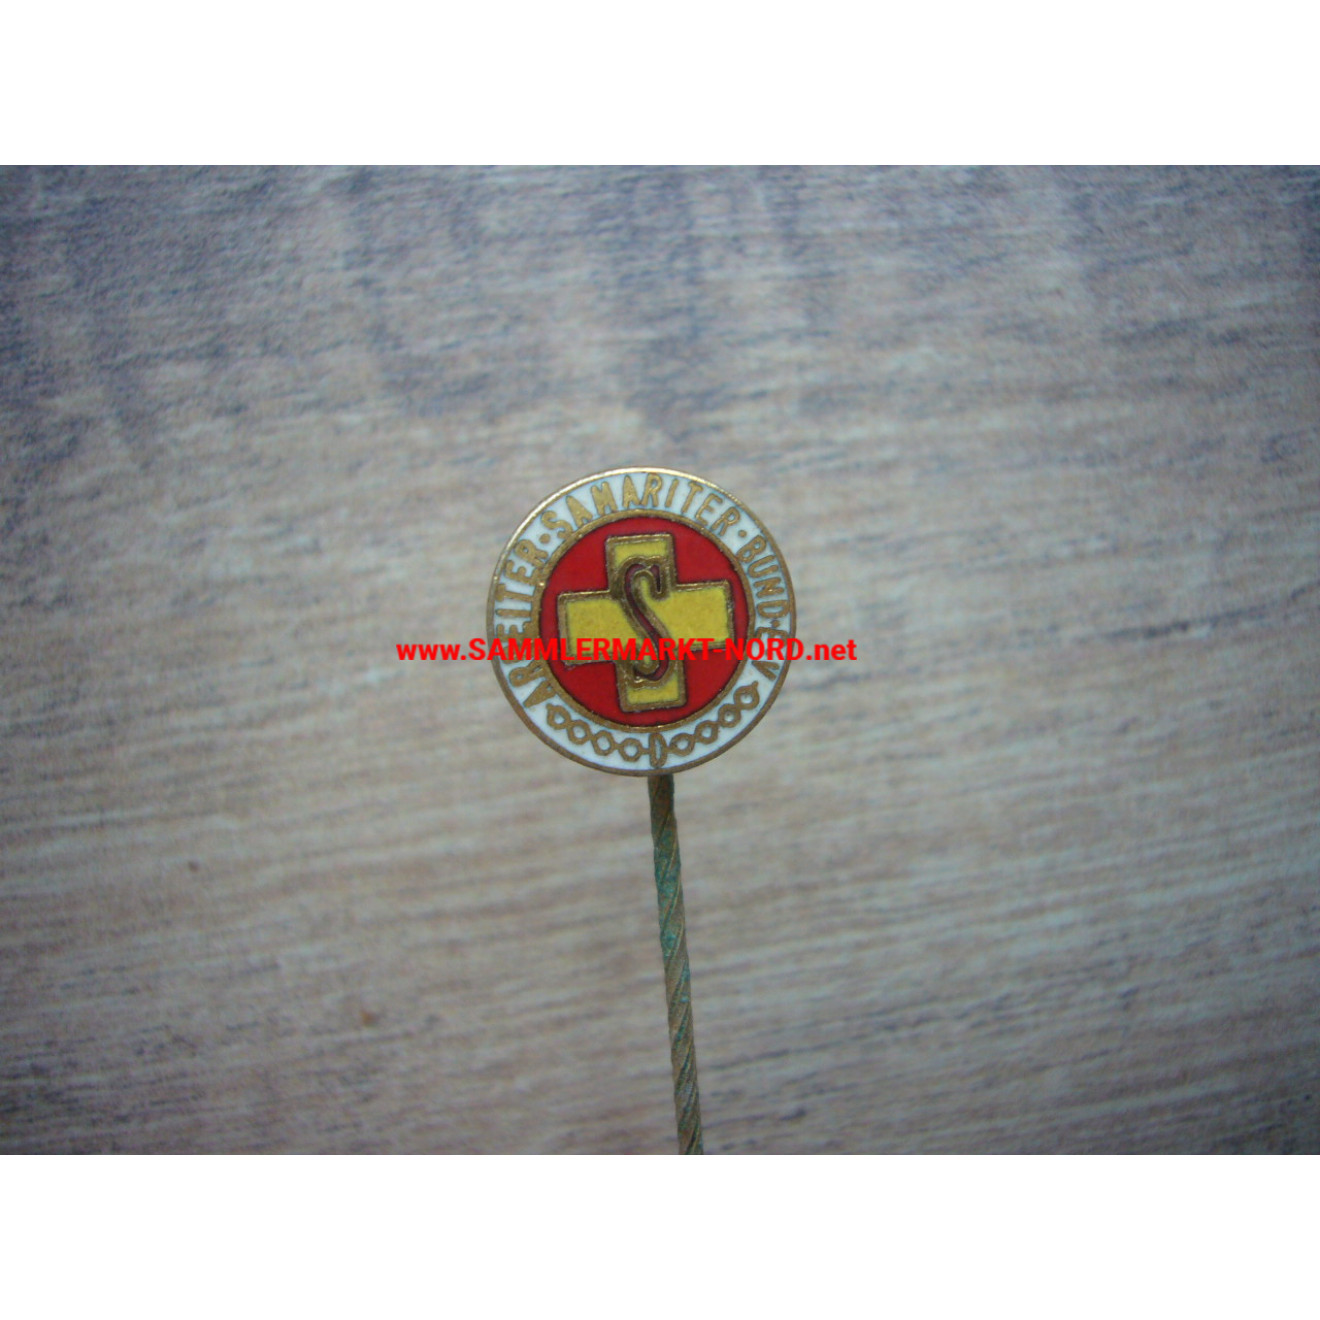 ASB Arbeiter Samariter Bund - Membership pin